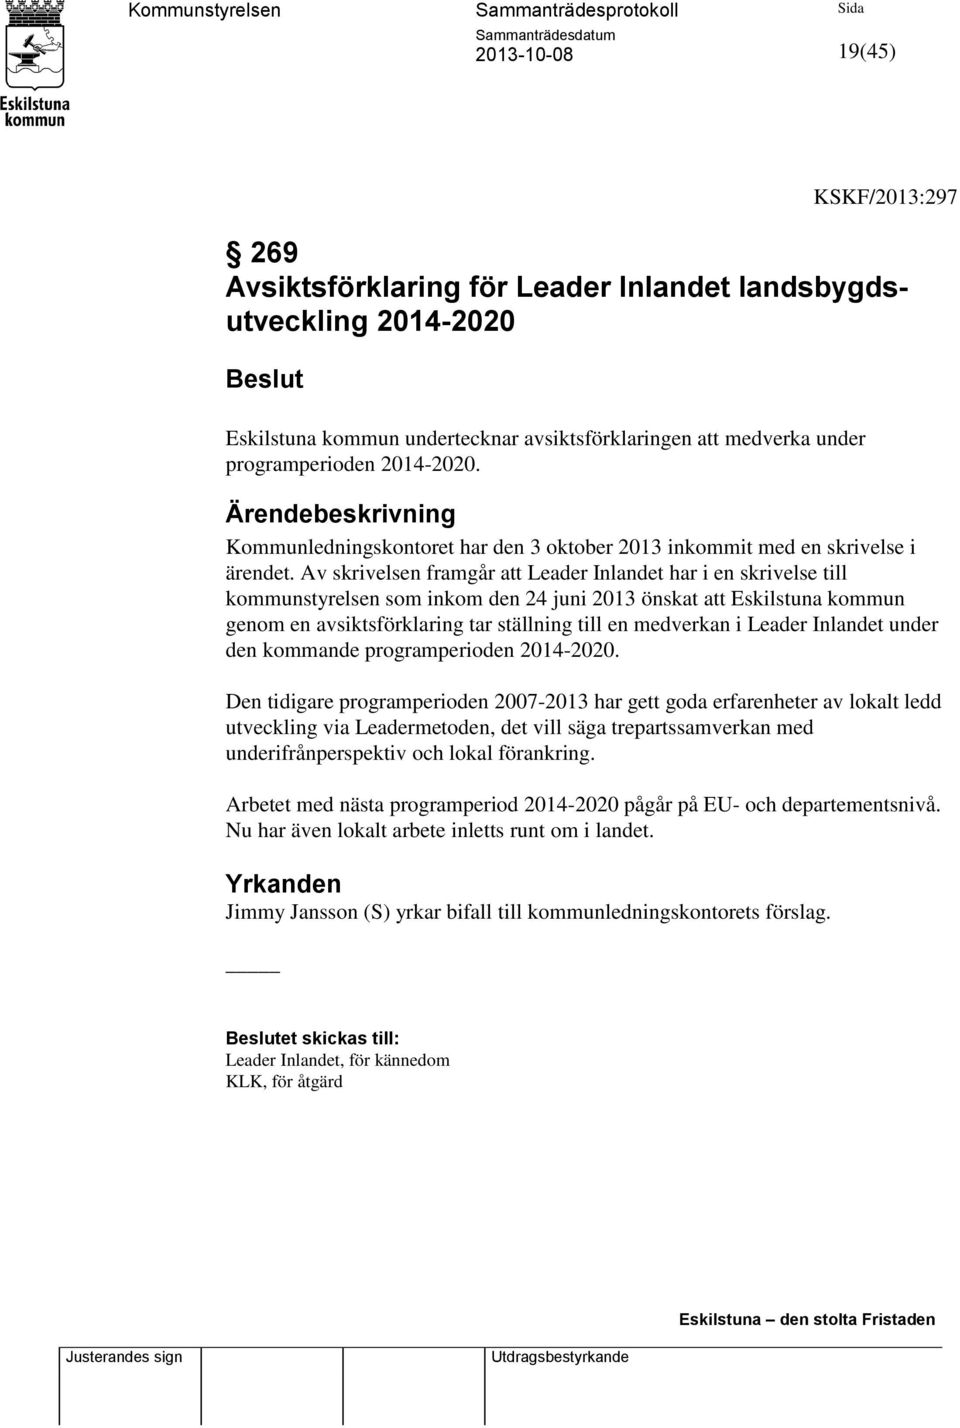 Av skrivelsen framgår att Leader Inlandet har i en skrivelse till kommunstyrelsen som inkom den 24 juni 2013 önskat att Eskilstuna kommun genom en avsiktsförklaring tar ställning till en medverkan i